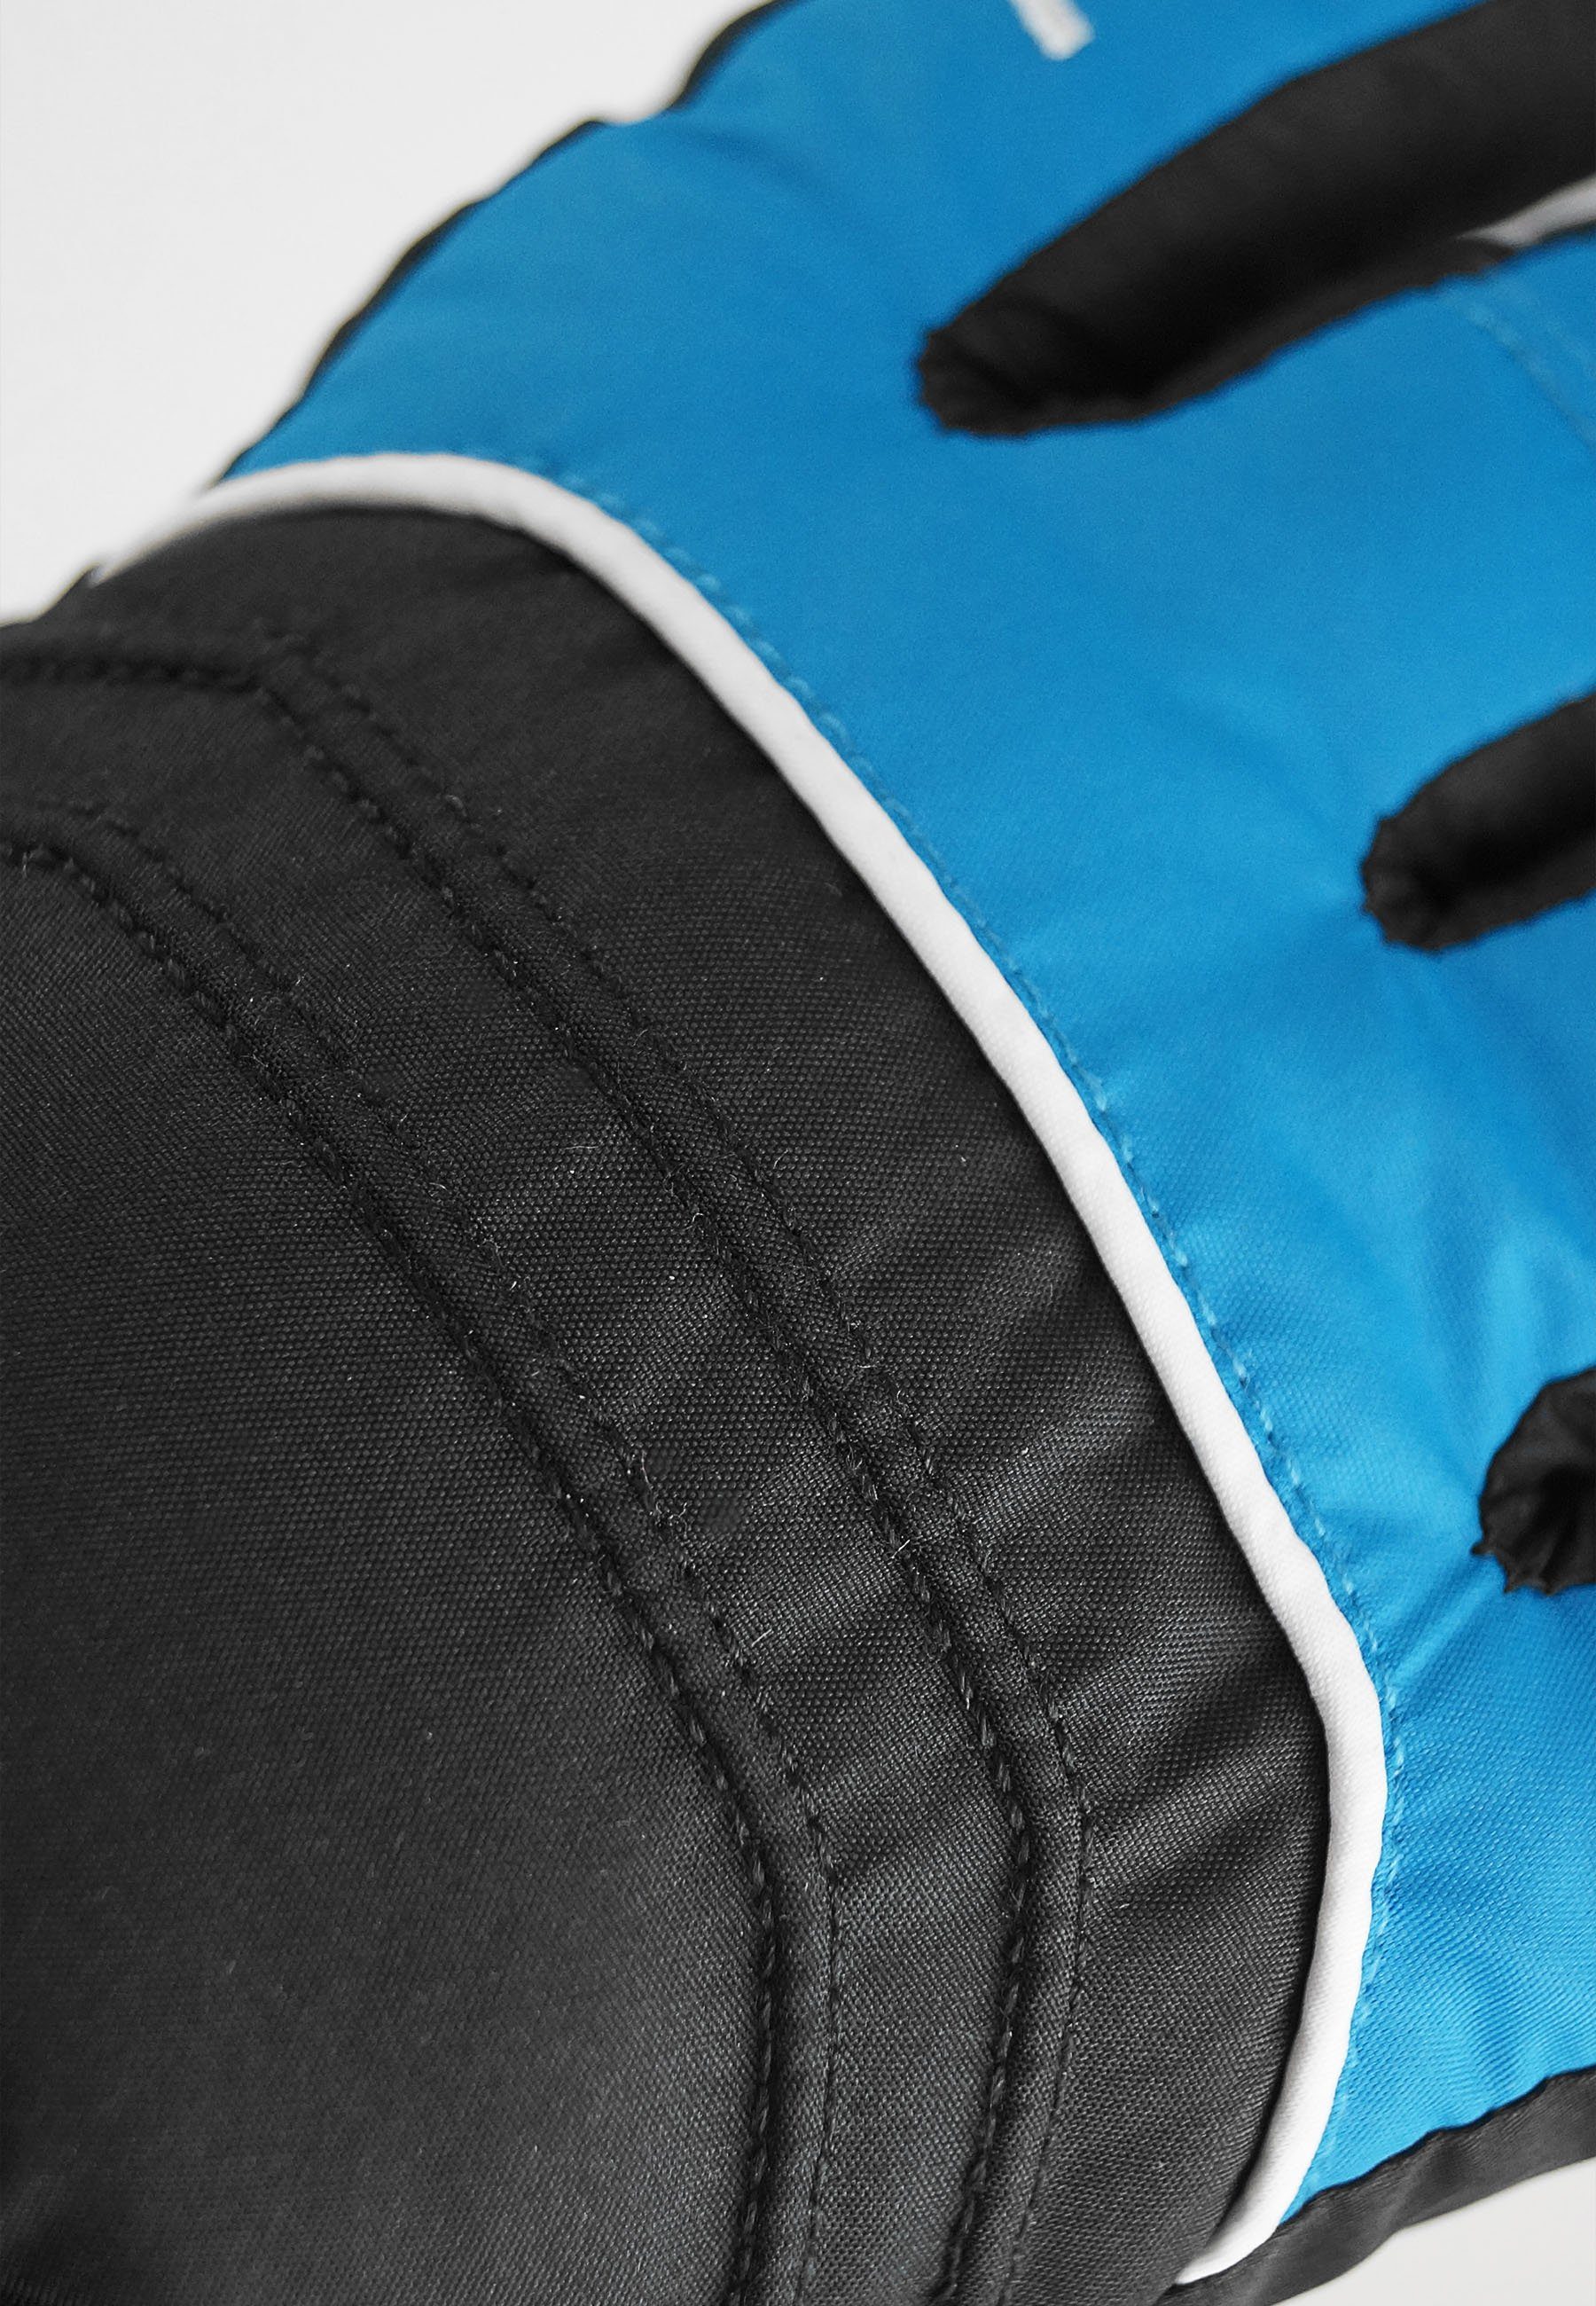 Reusch Skihandschuhe Teddy GORE-TEX mit Funktionsmembran blau-schwarz wasserdichter